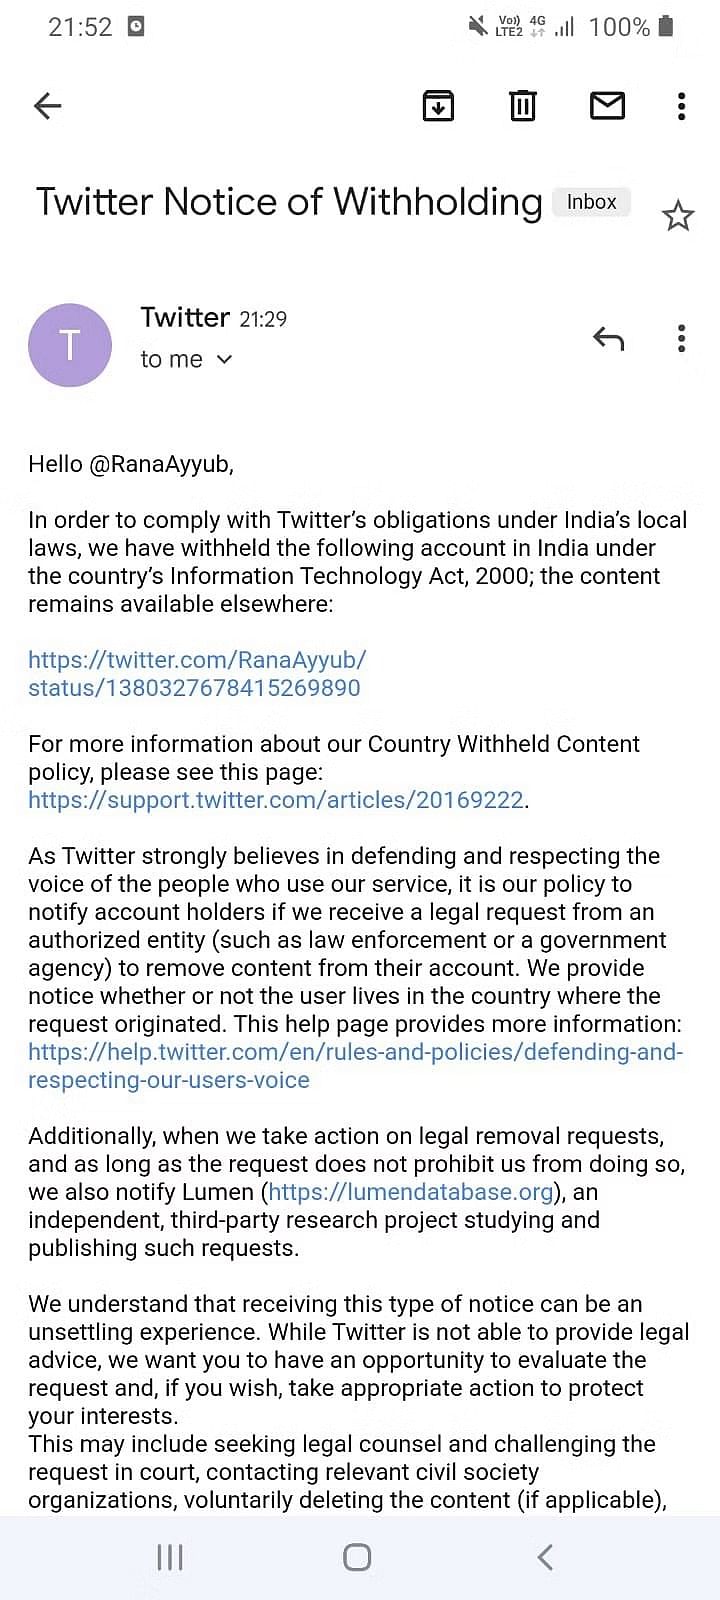 Twitter Vs Indian government : केंद्र ने किसानों आंदोलन के दौरान सैकड़ों ट्विटर अकाउंट को ब्लॉक करने का आदेश दिया था